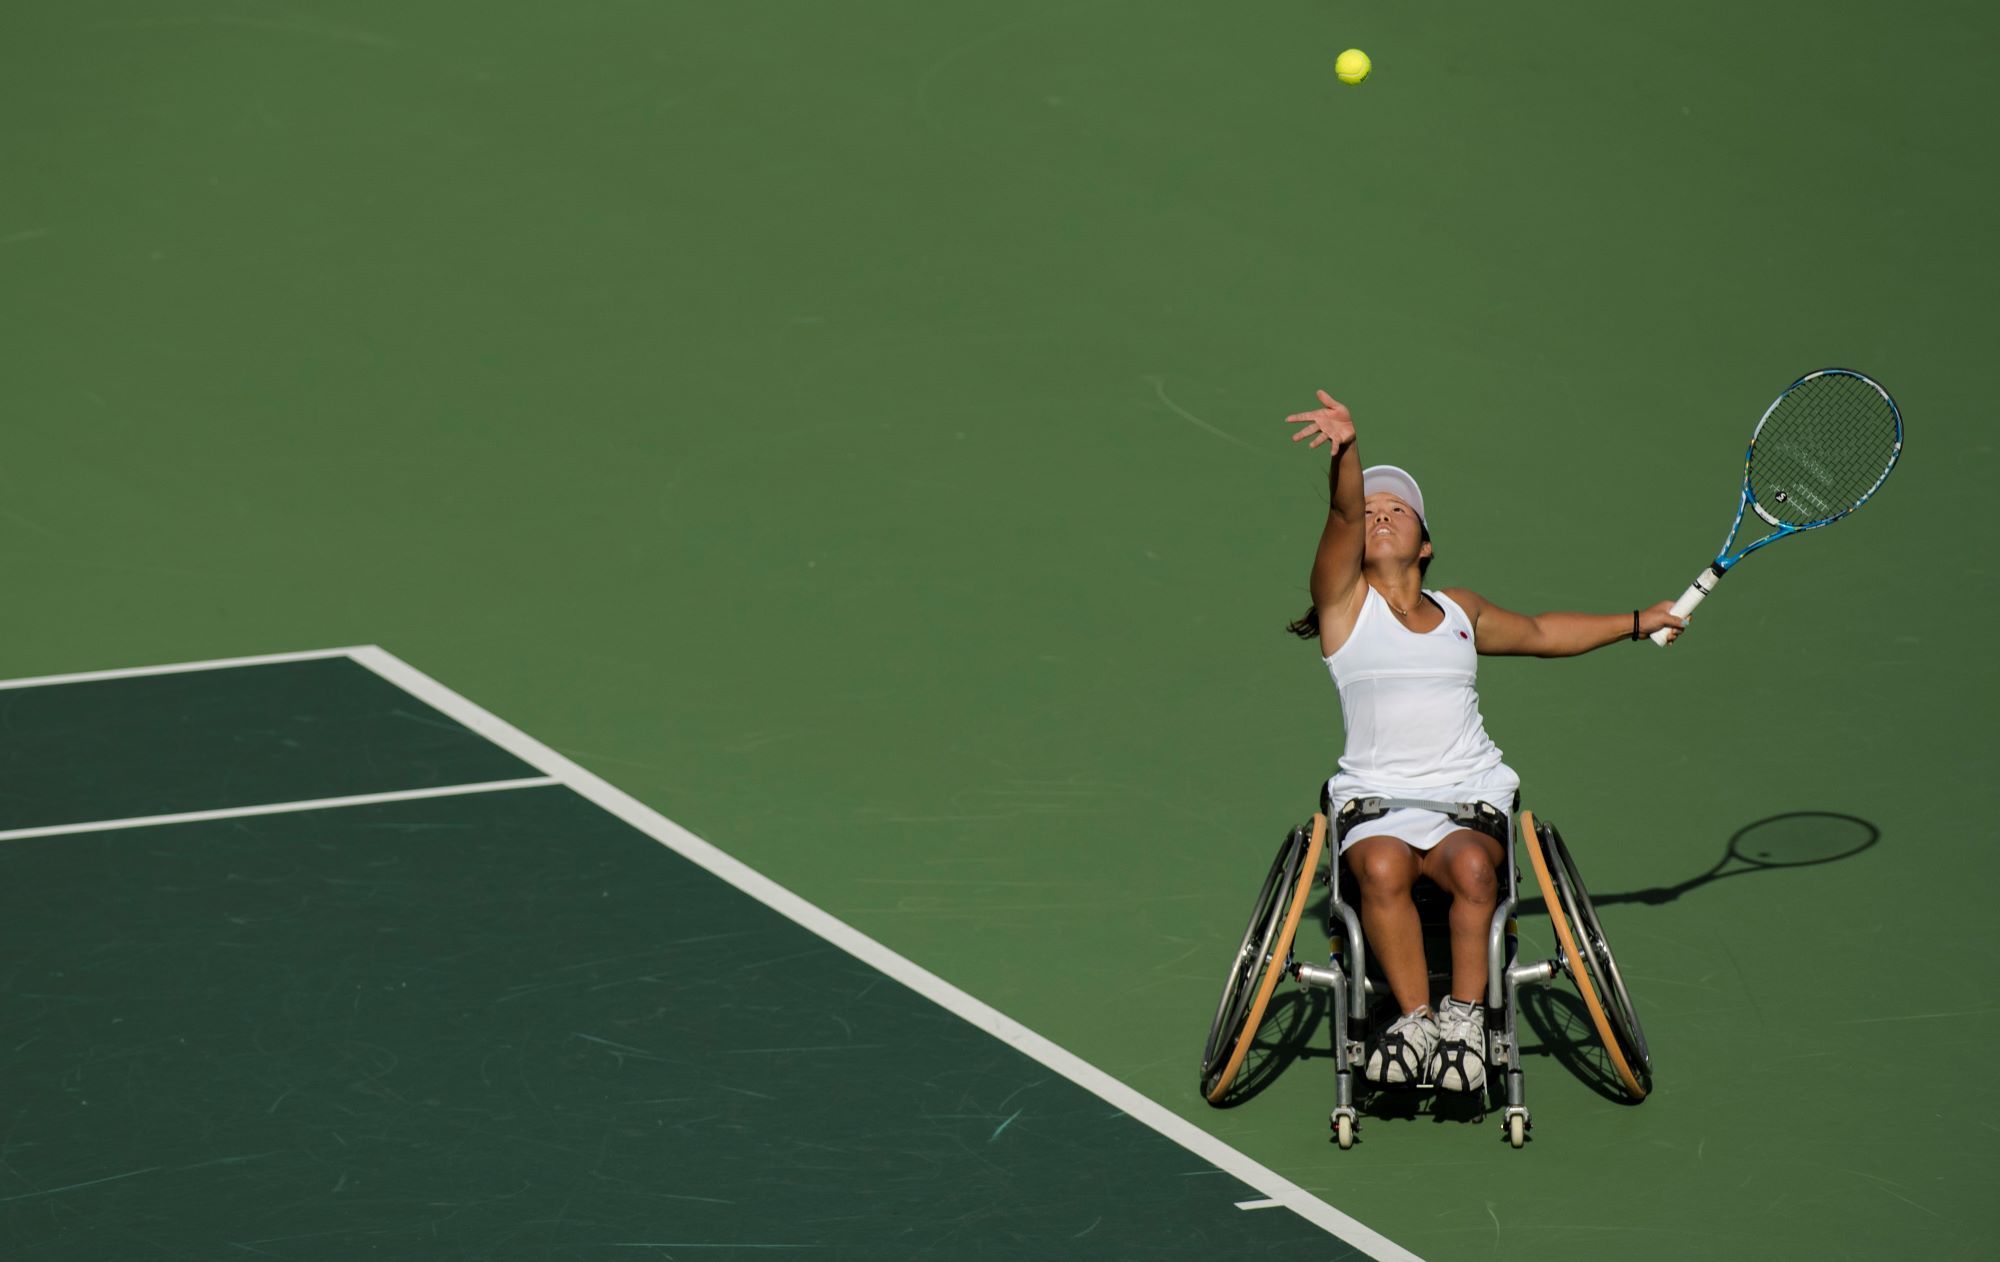 Une joueuse de tennis fauteuil japonaise réalise son service